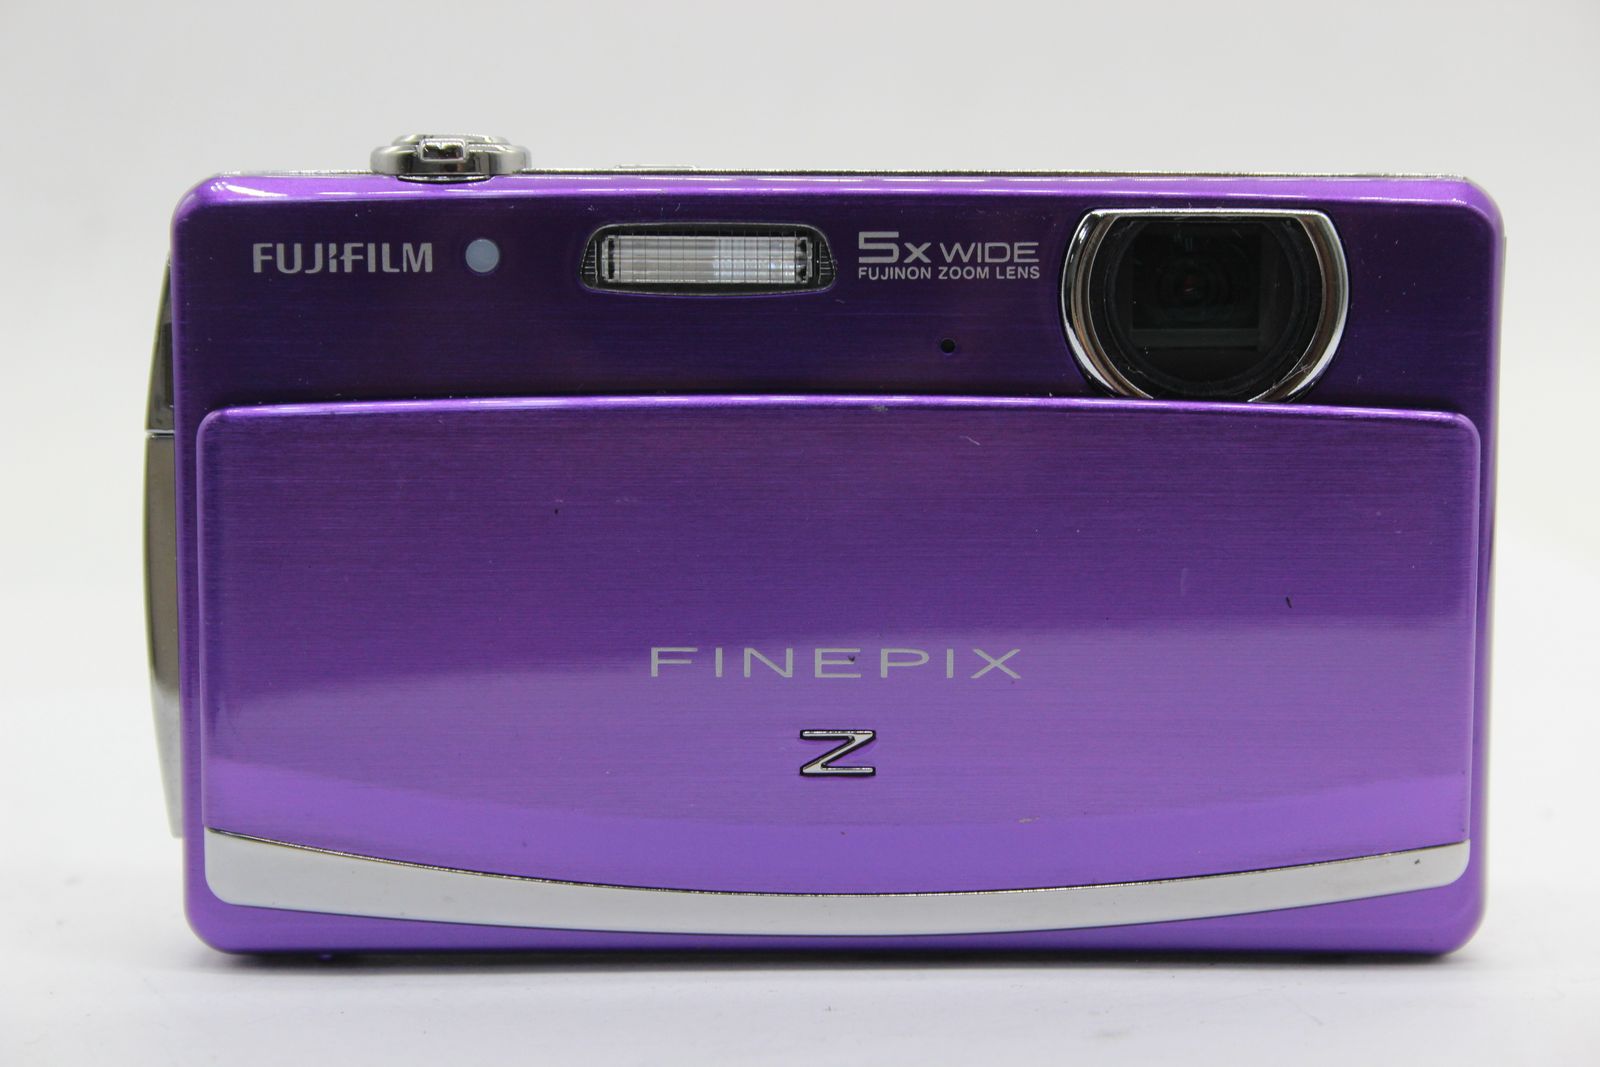 返品保証】 フジフィルム Fujifilm Finepix Z90 パープル 5x Wide 